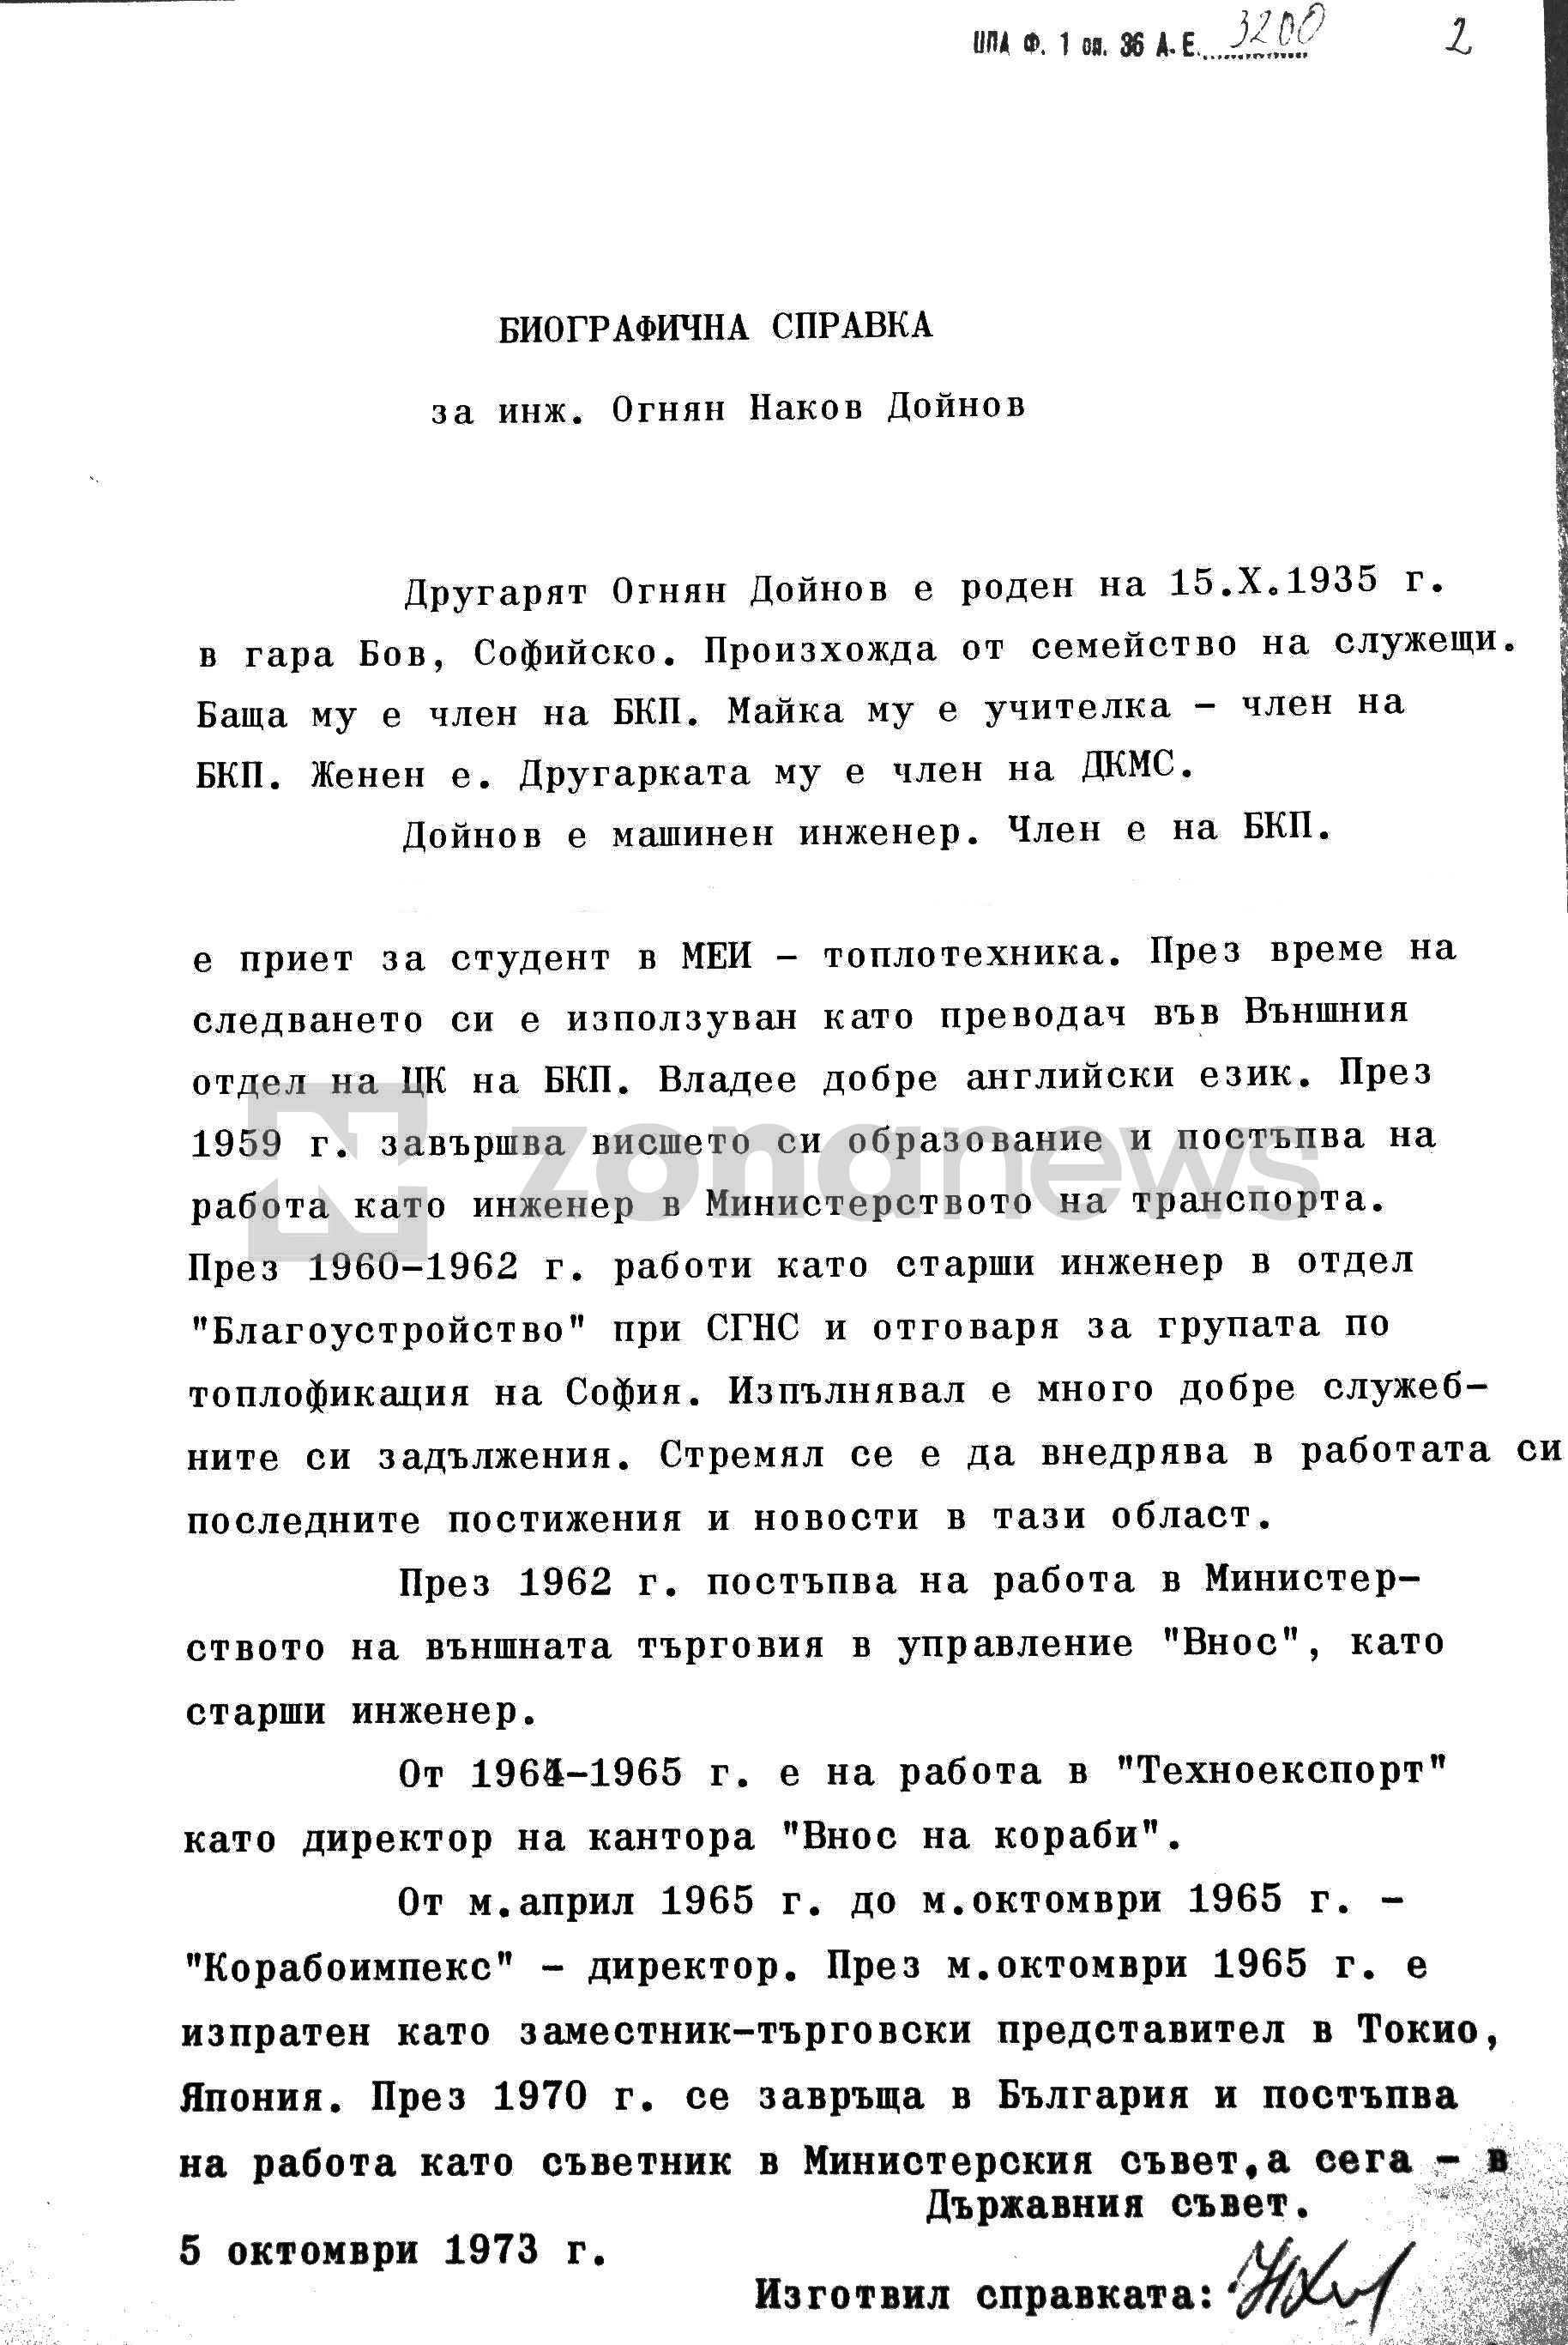 Биографичната справка за Огнян Дойнов от архива на ЦК на БКП